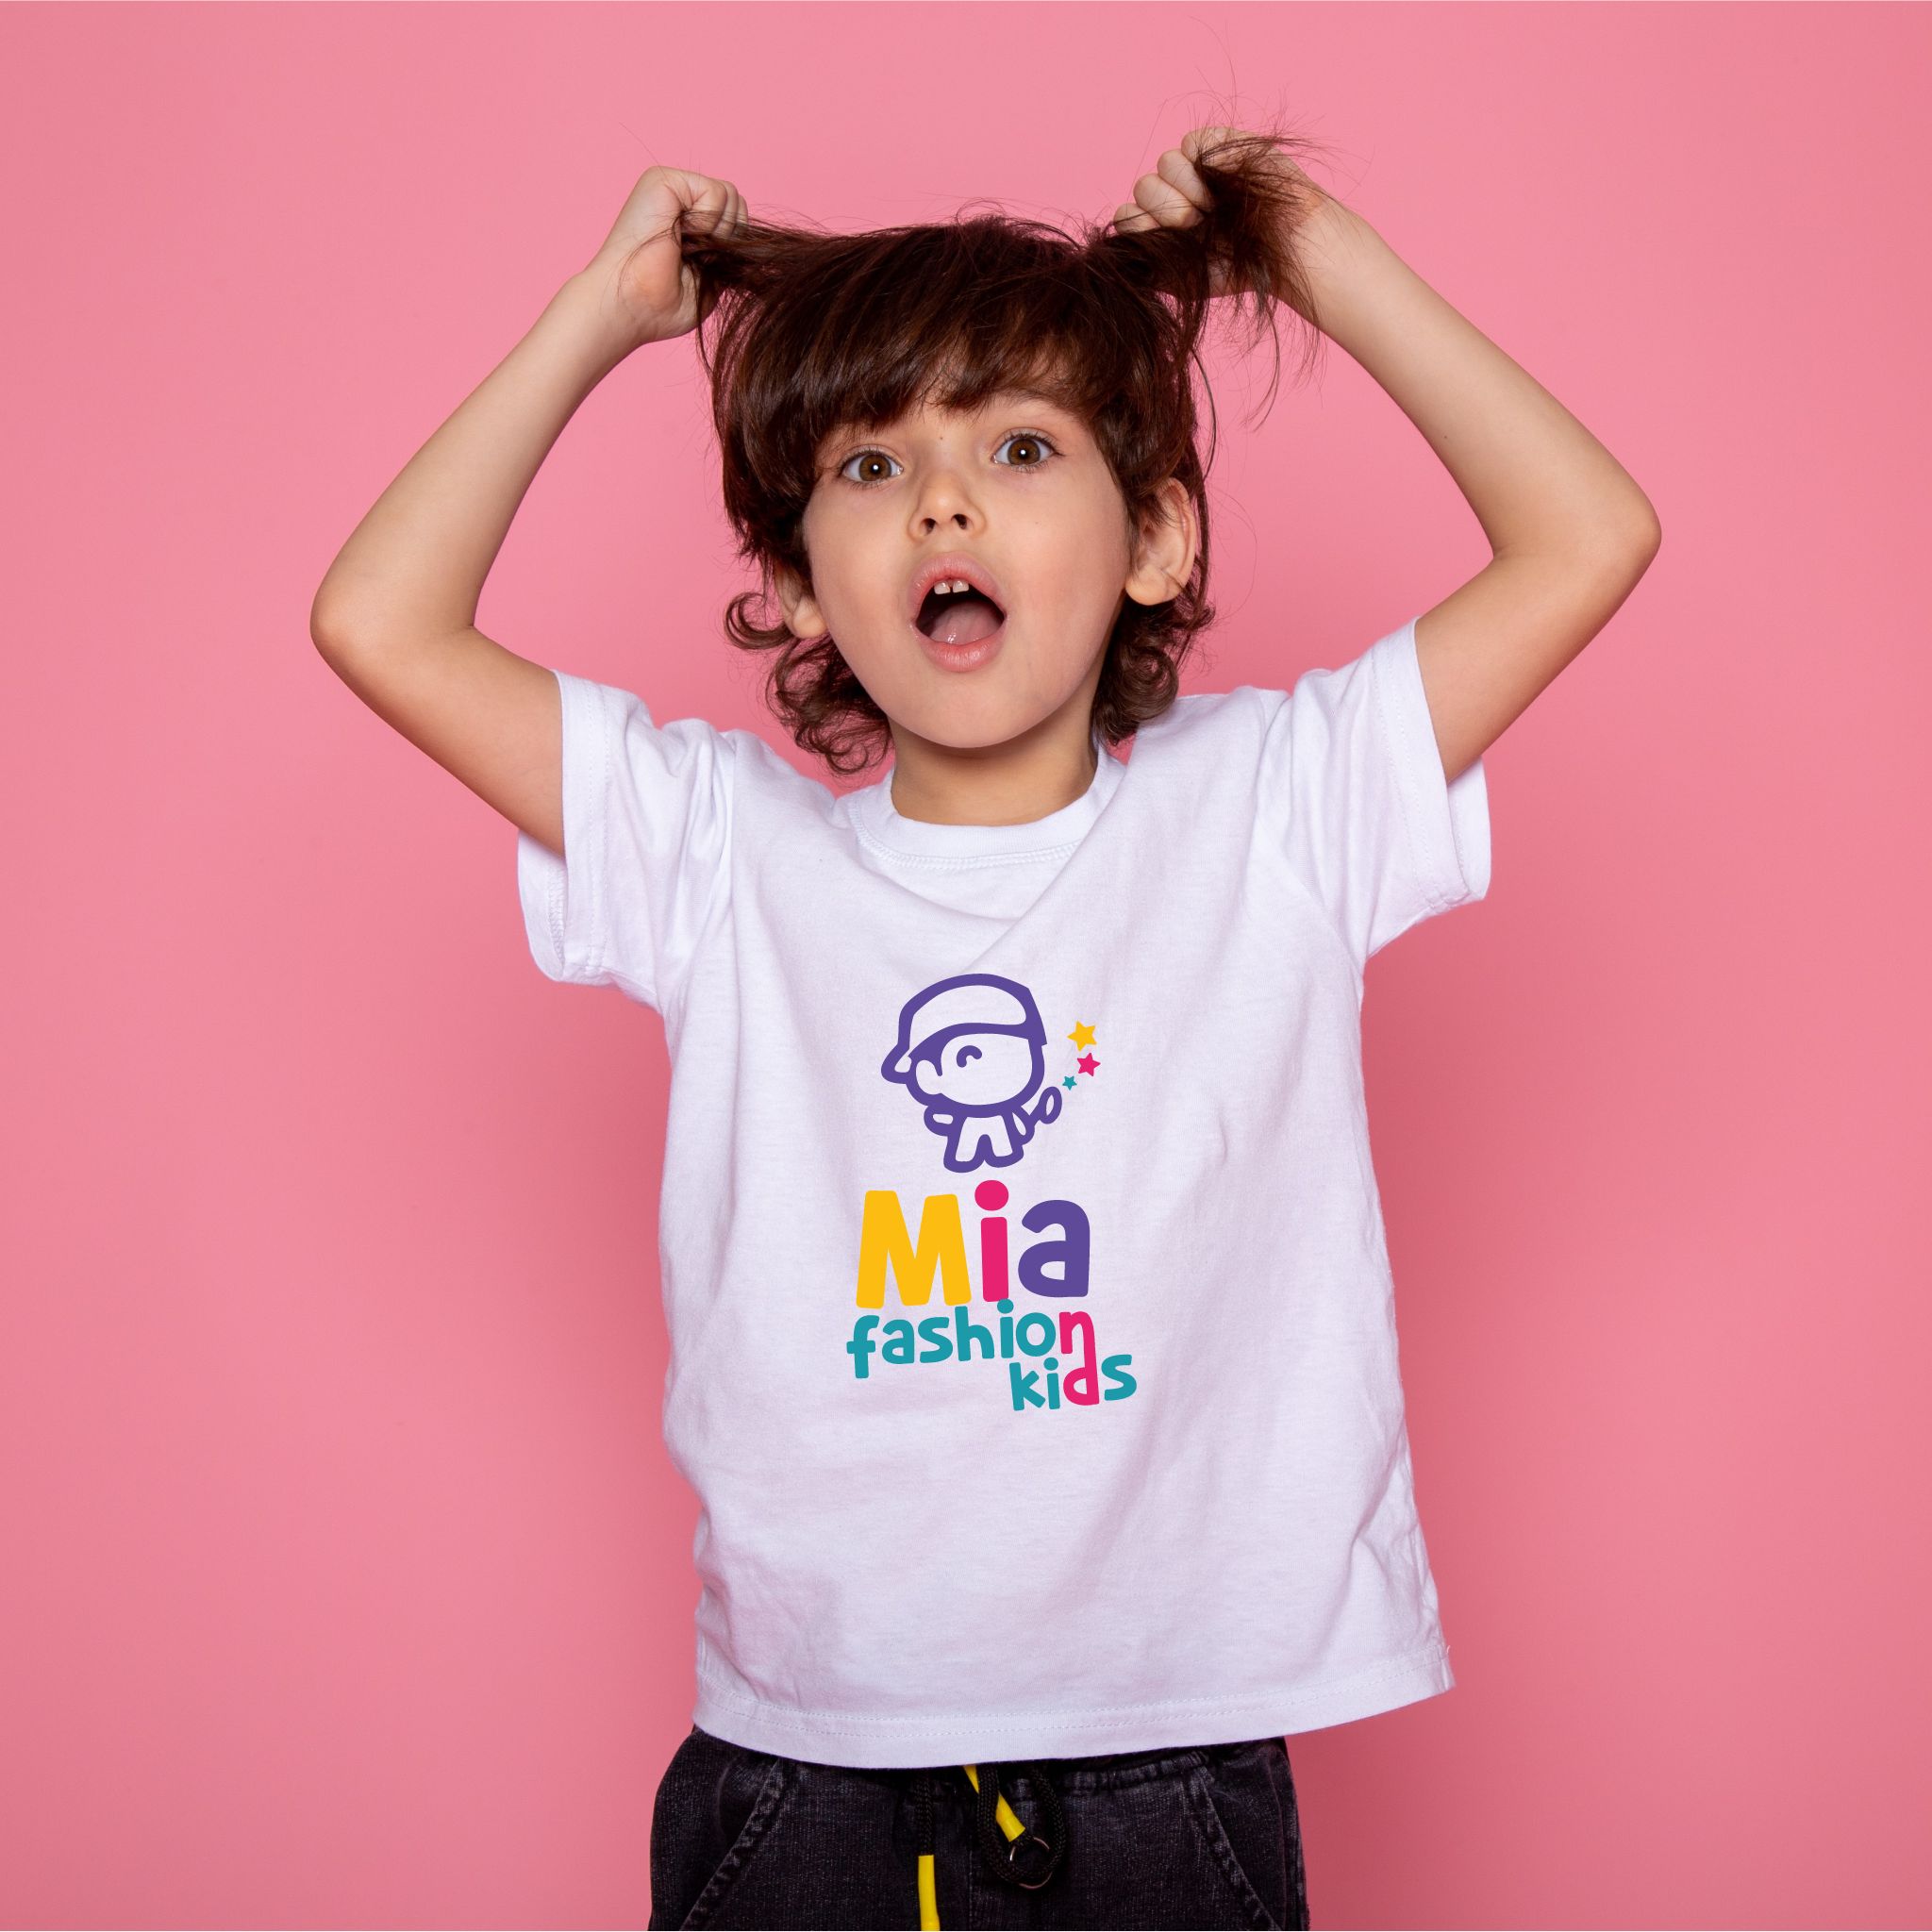 Camiseta manga corta niño y niña Mia Fashion Kids logo varios